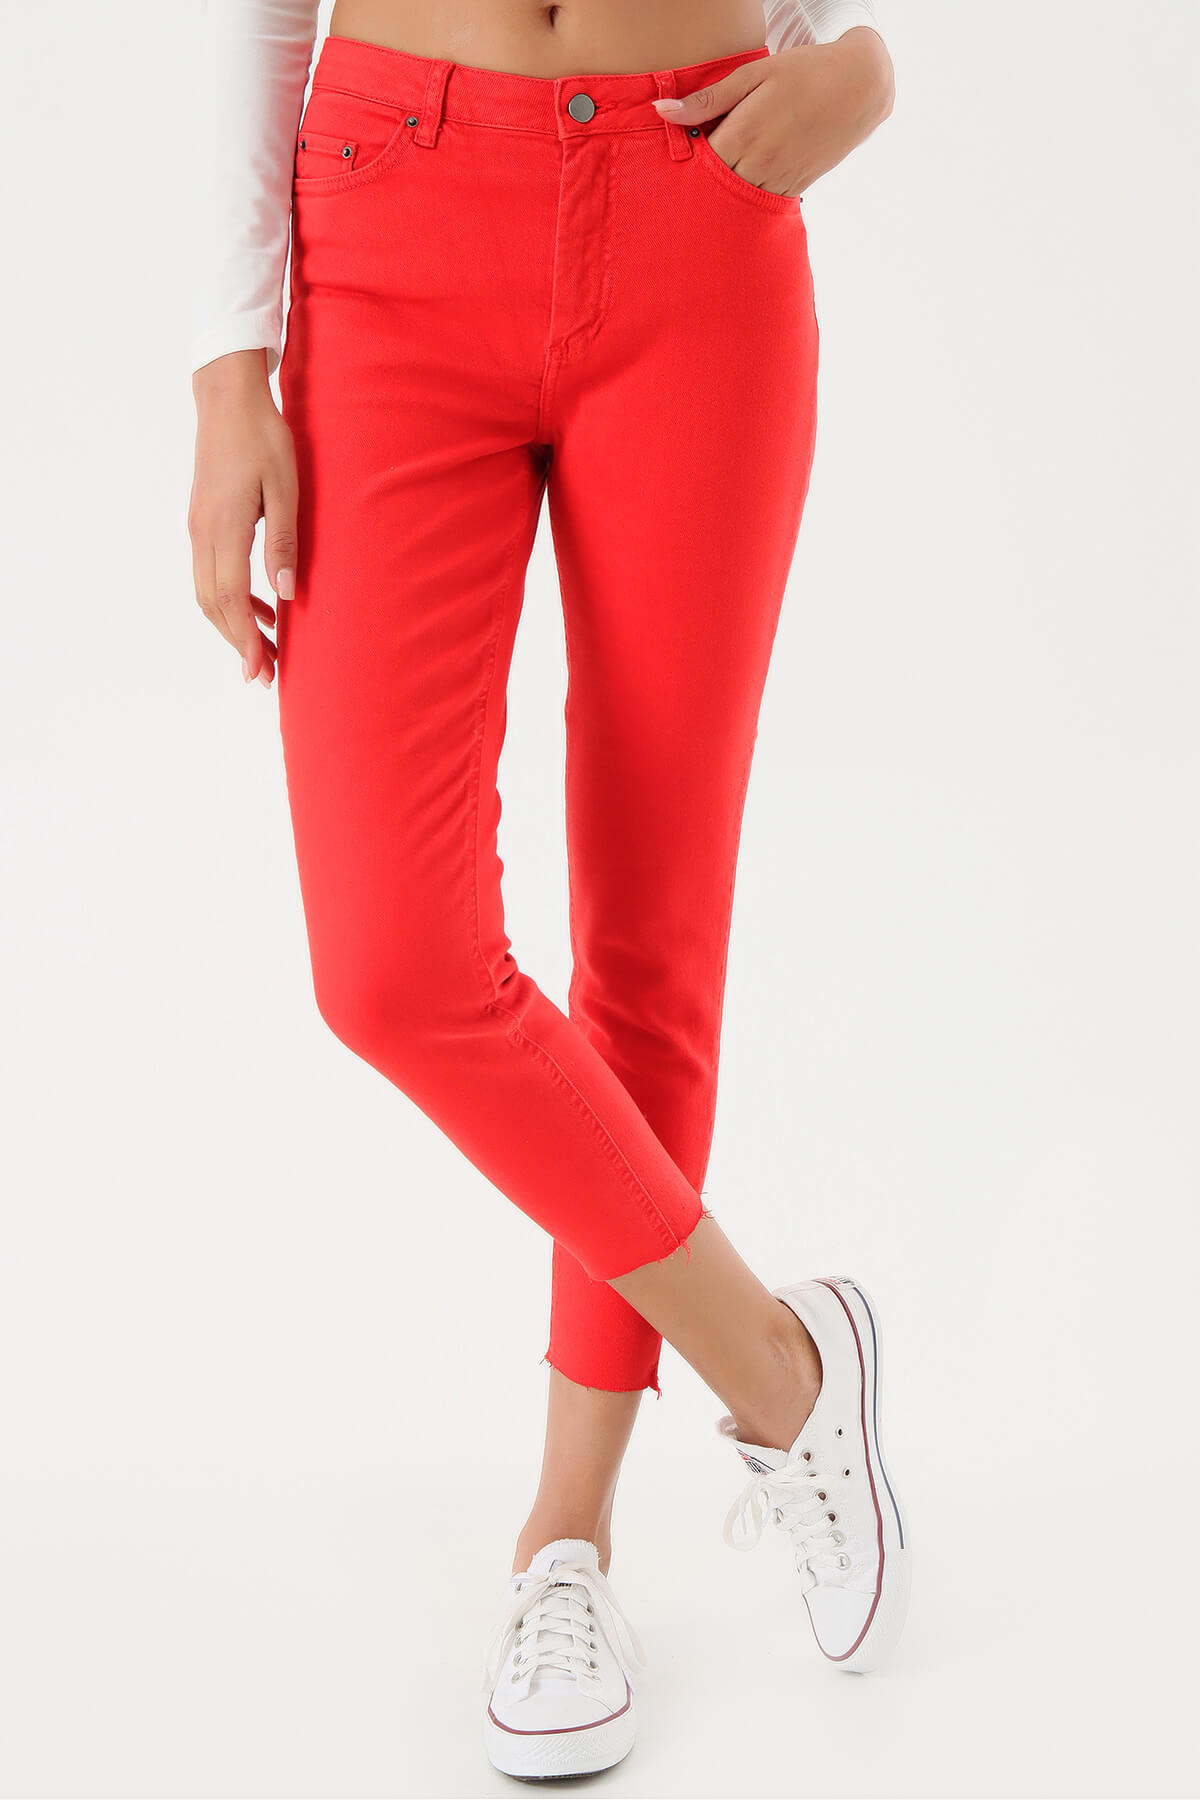 Kırmızı Skinny Jean Pantolon - Moda Kapımda İle Kapınızda!